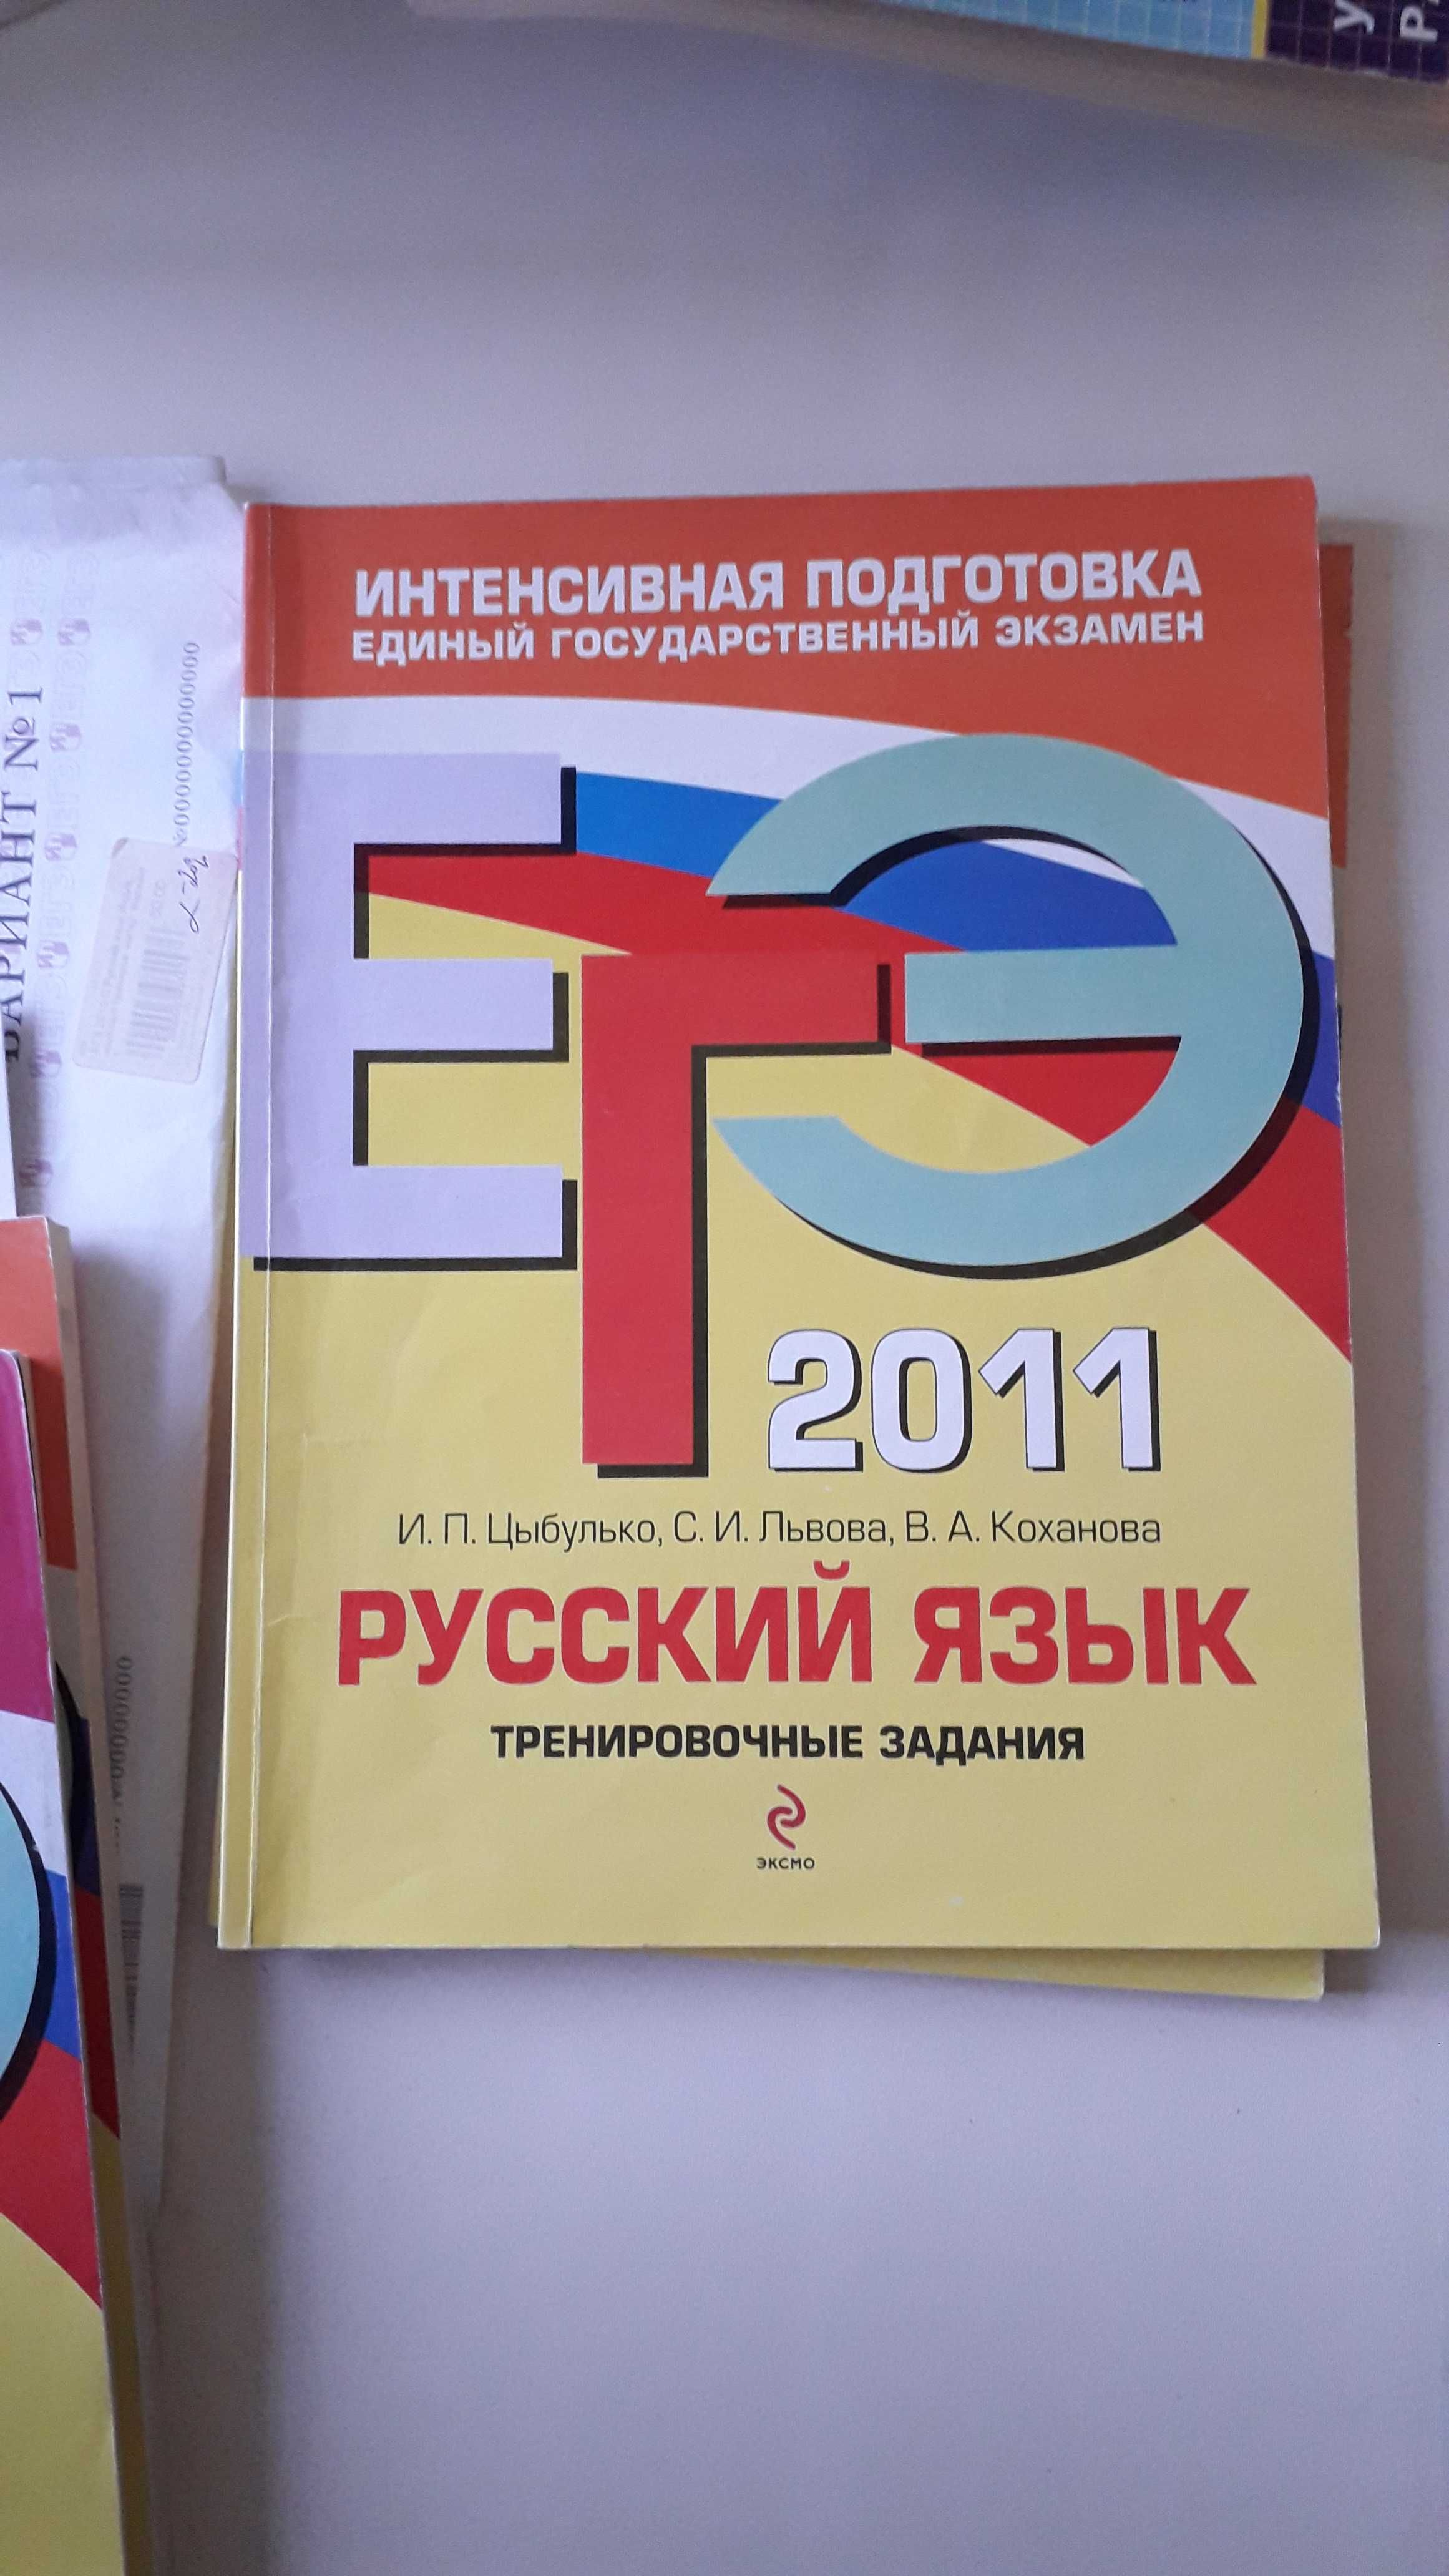 Русский язык. Учебники, словари.